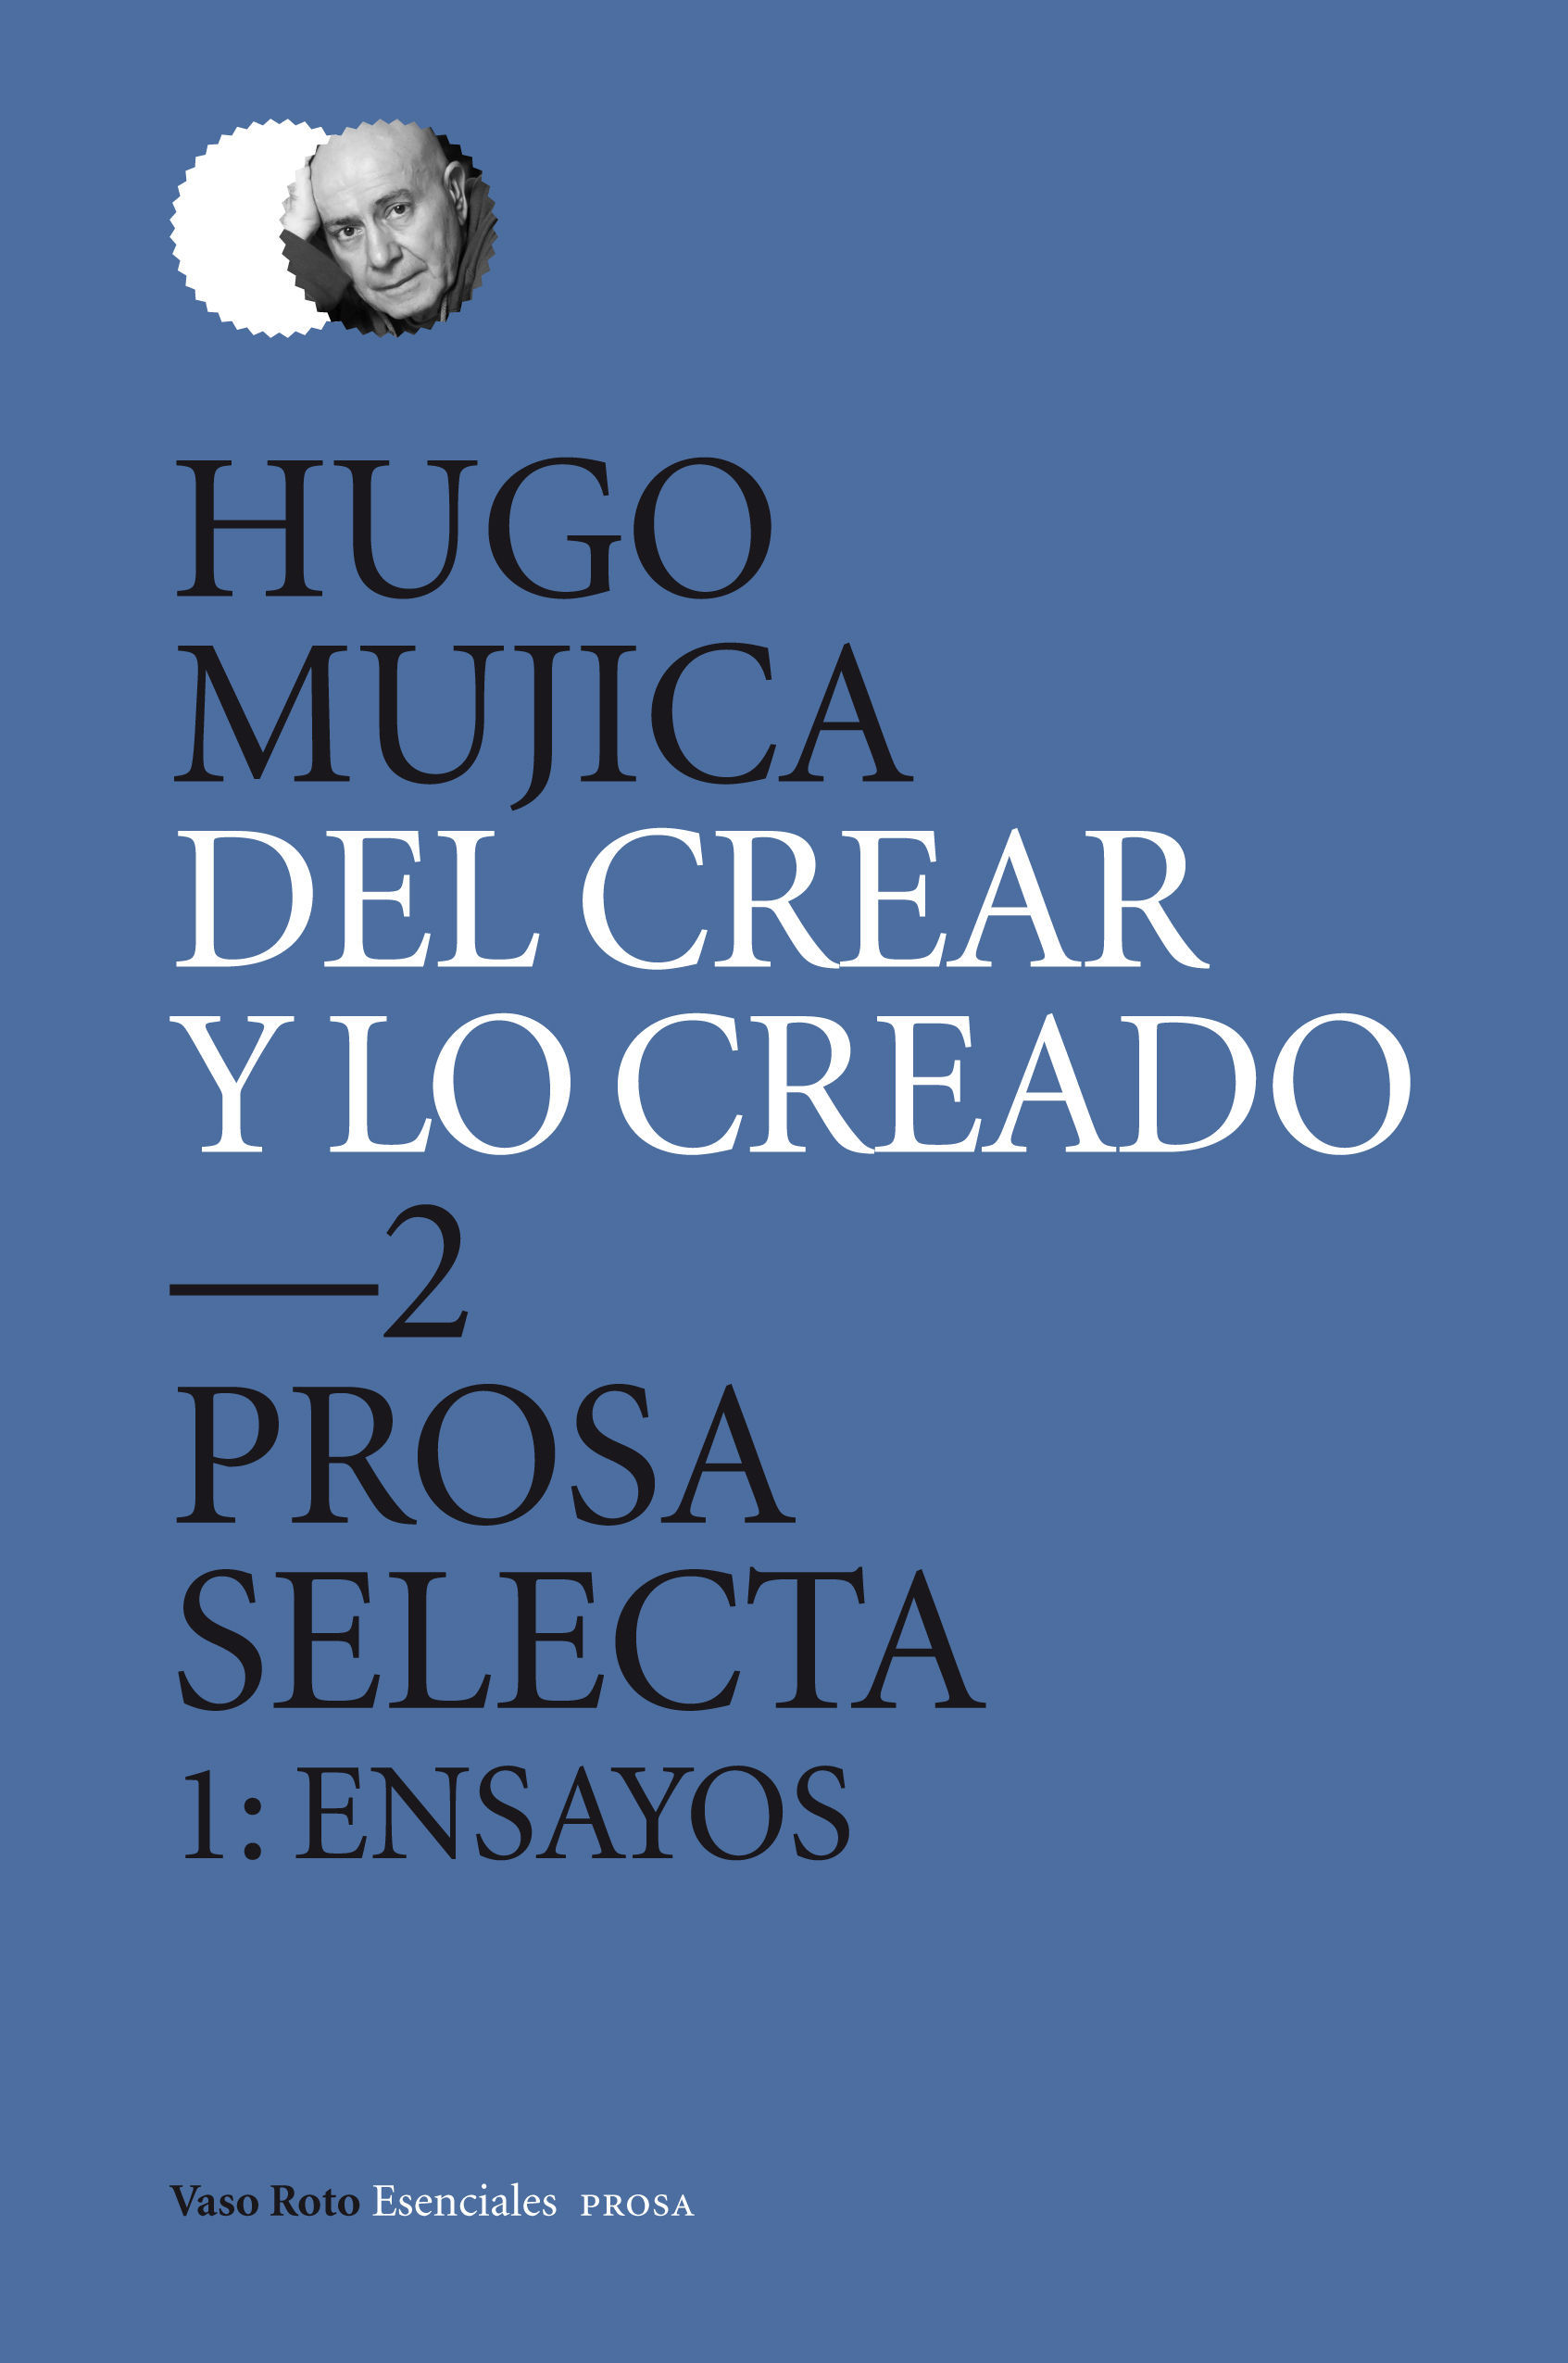 DEL CREAR Y LO CREADO 2. PROSA SELECTA. 1: ENSAYOS. PROSA SELECTA 1: ENSAYOS